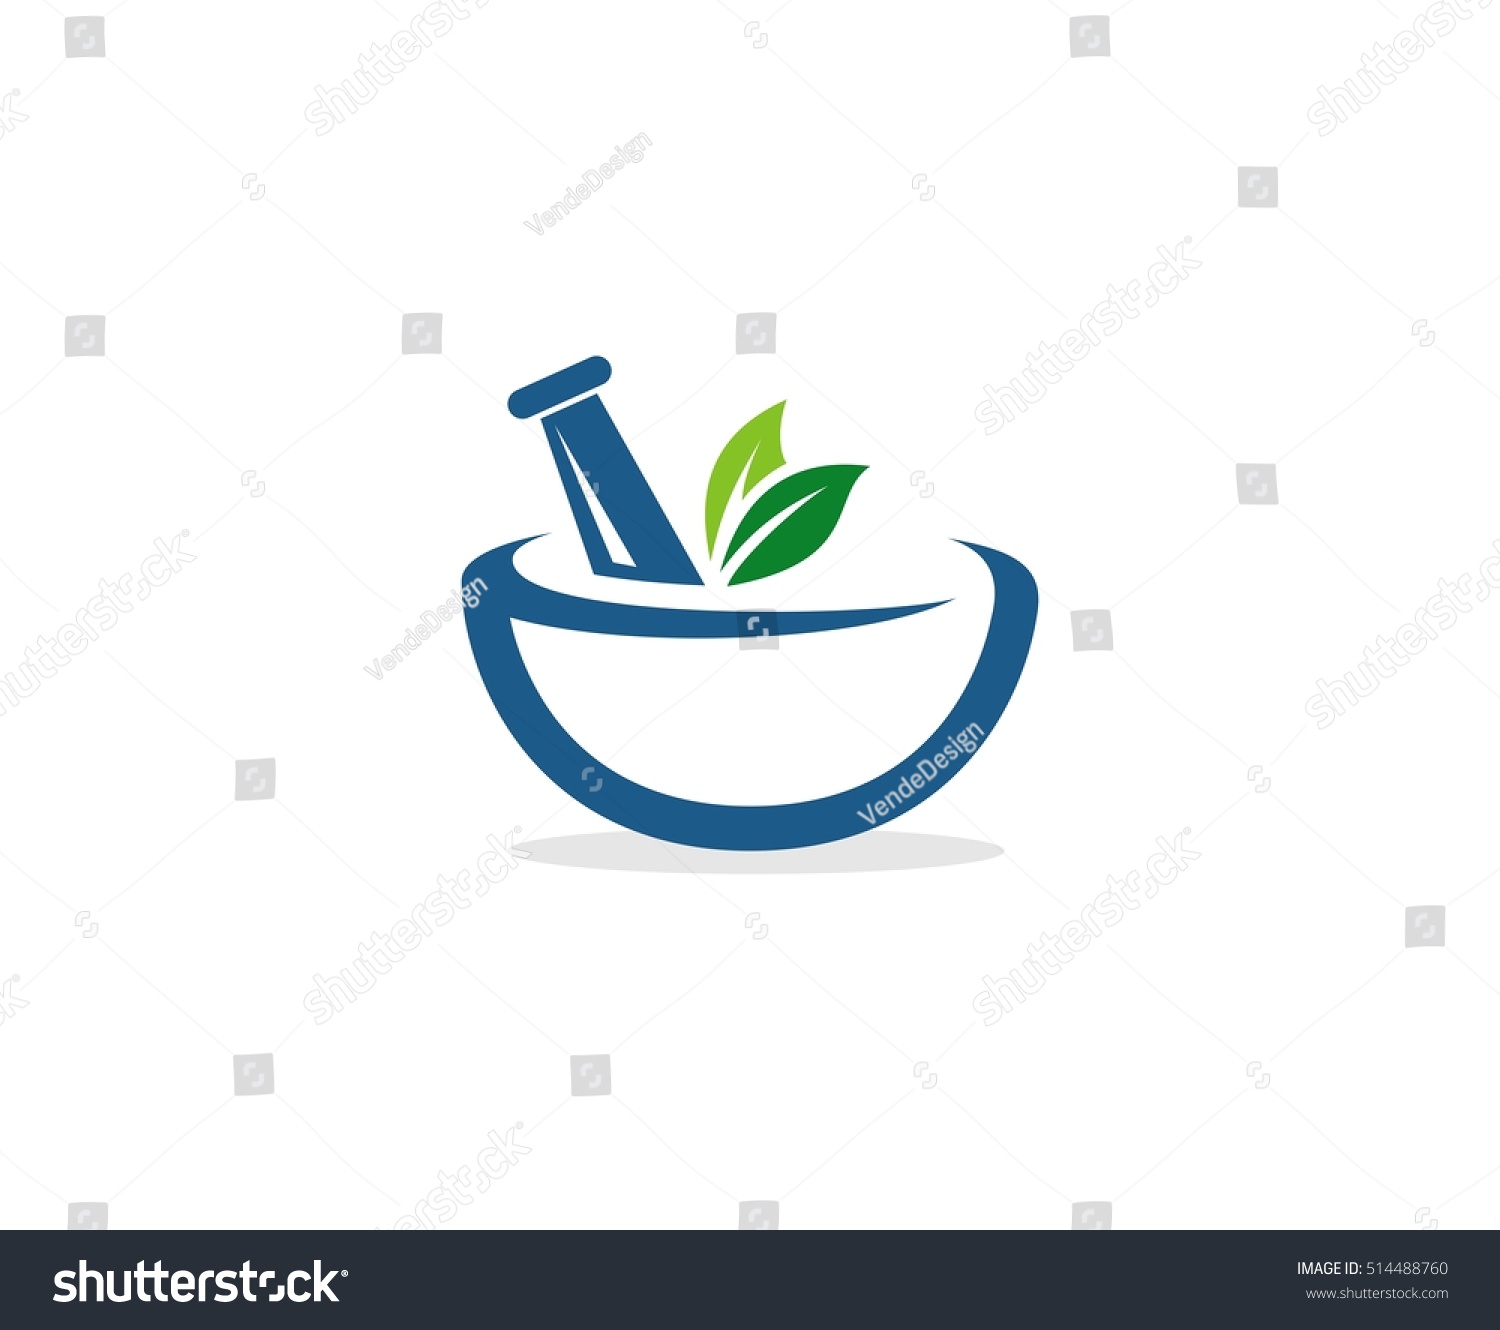 Pharmacy Logo Stock Vector Illustration 514488760 : Shutterstock